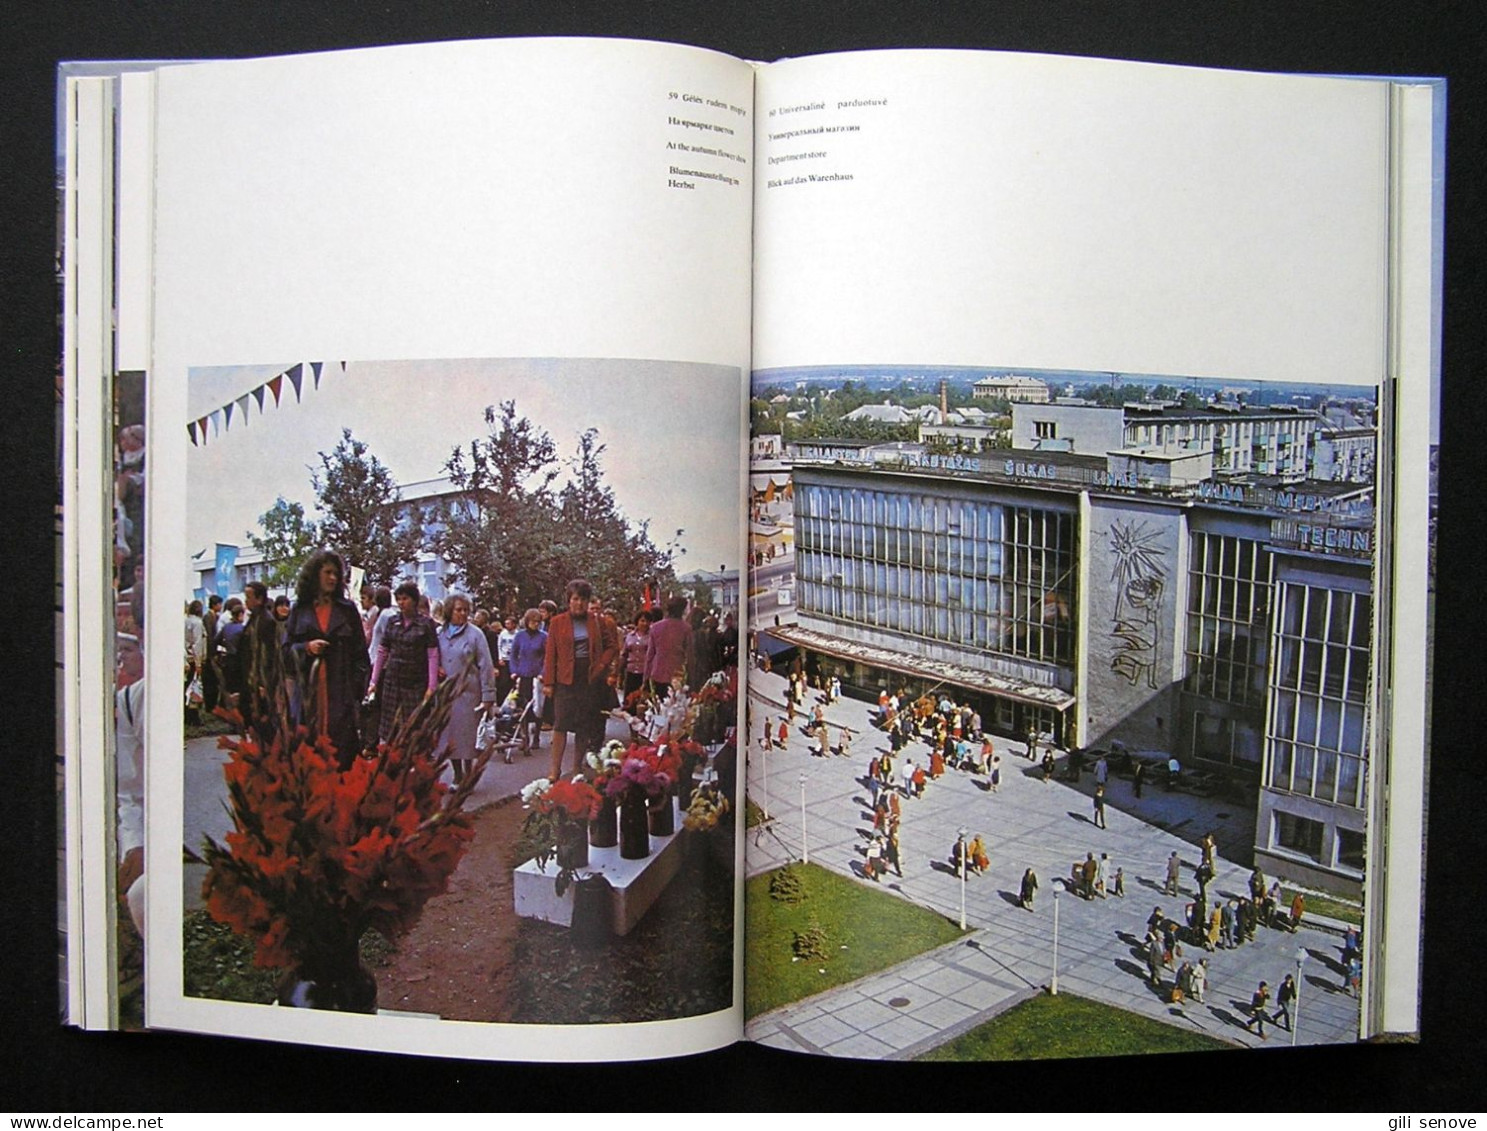 Lithuanian Book / Šiauliai 1984 - Culture